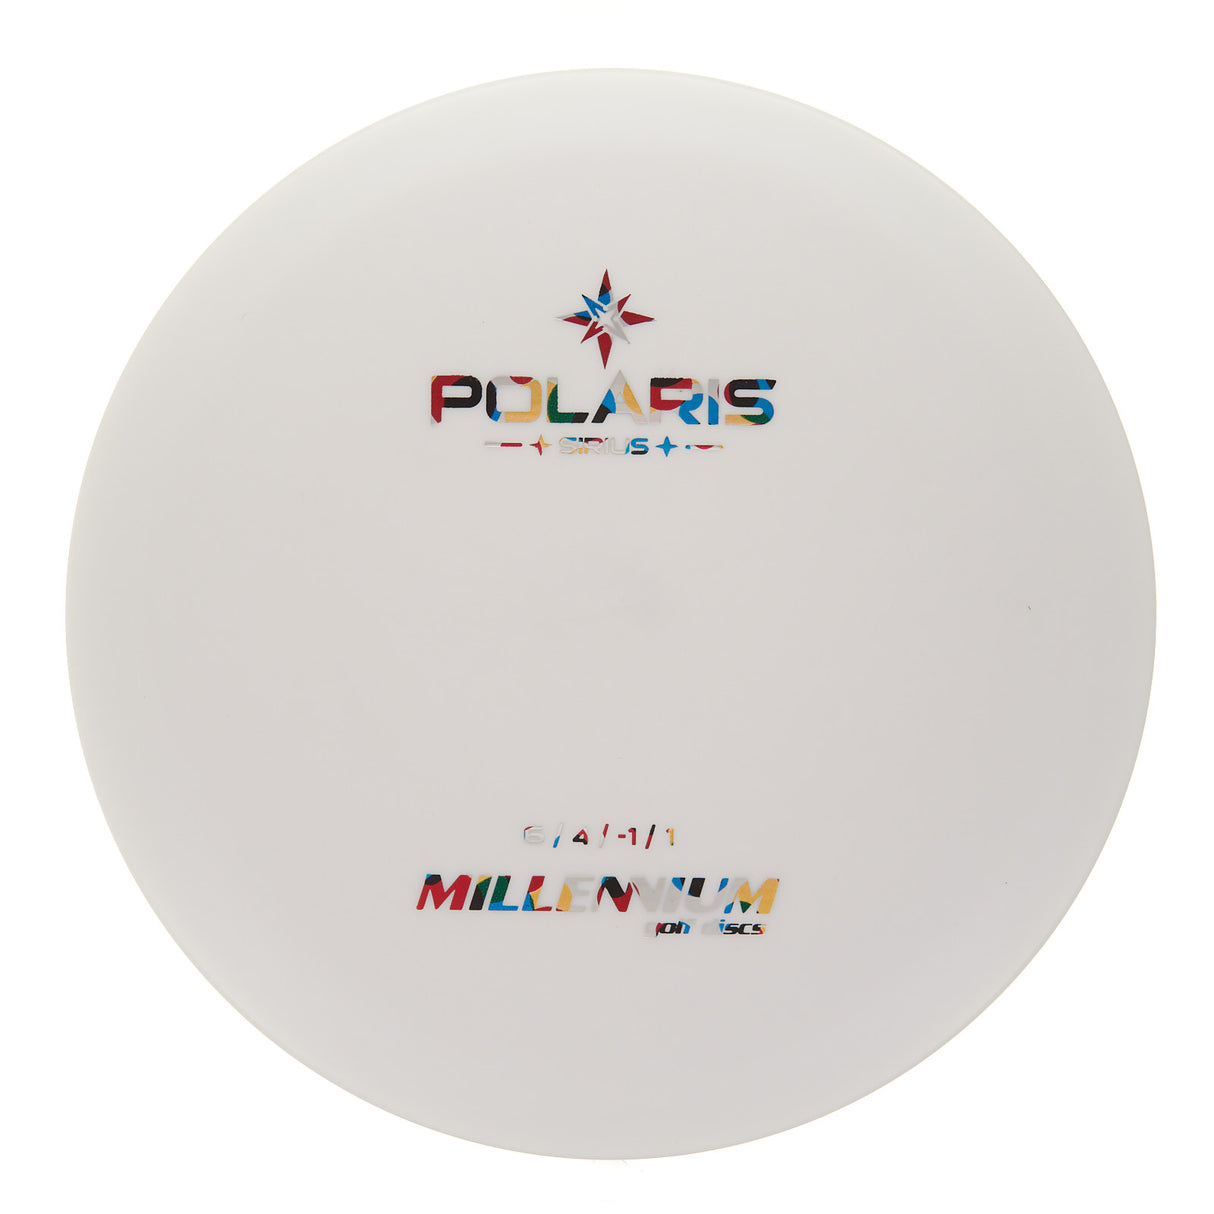 Millennium Polaris LS - Sirius 169g | Style 0002